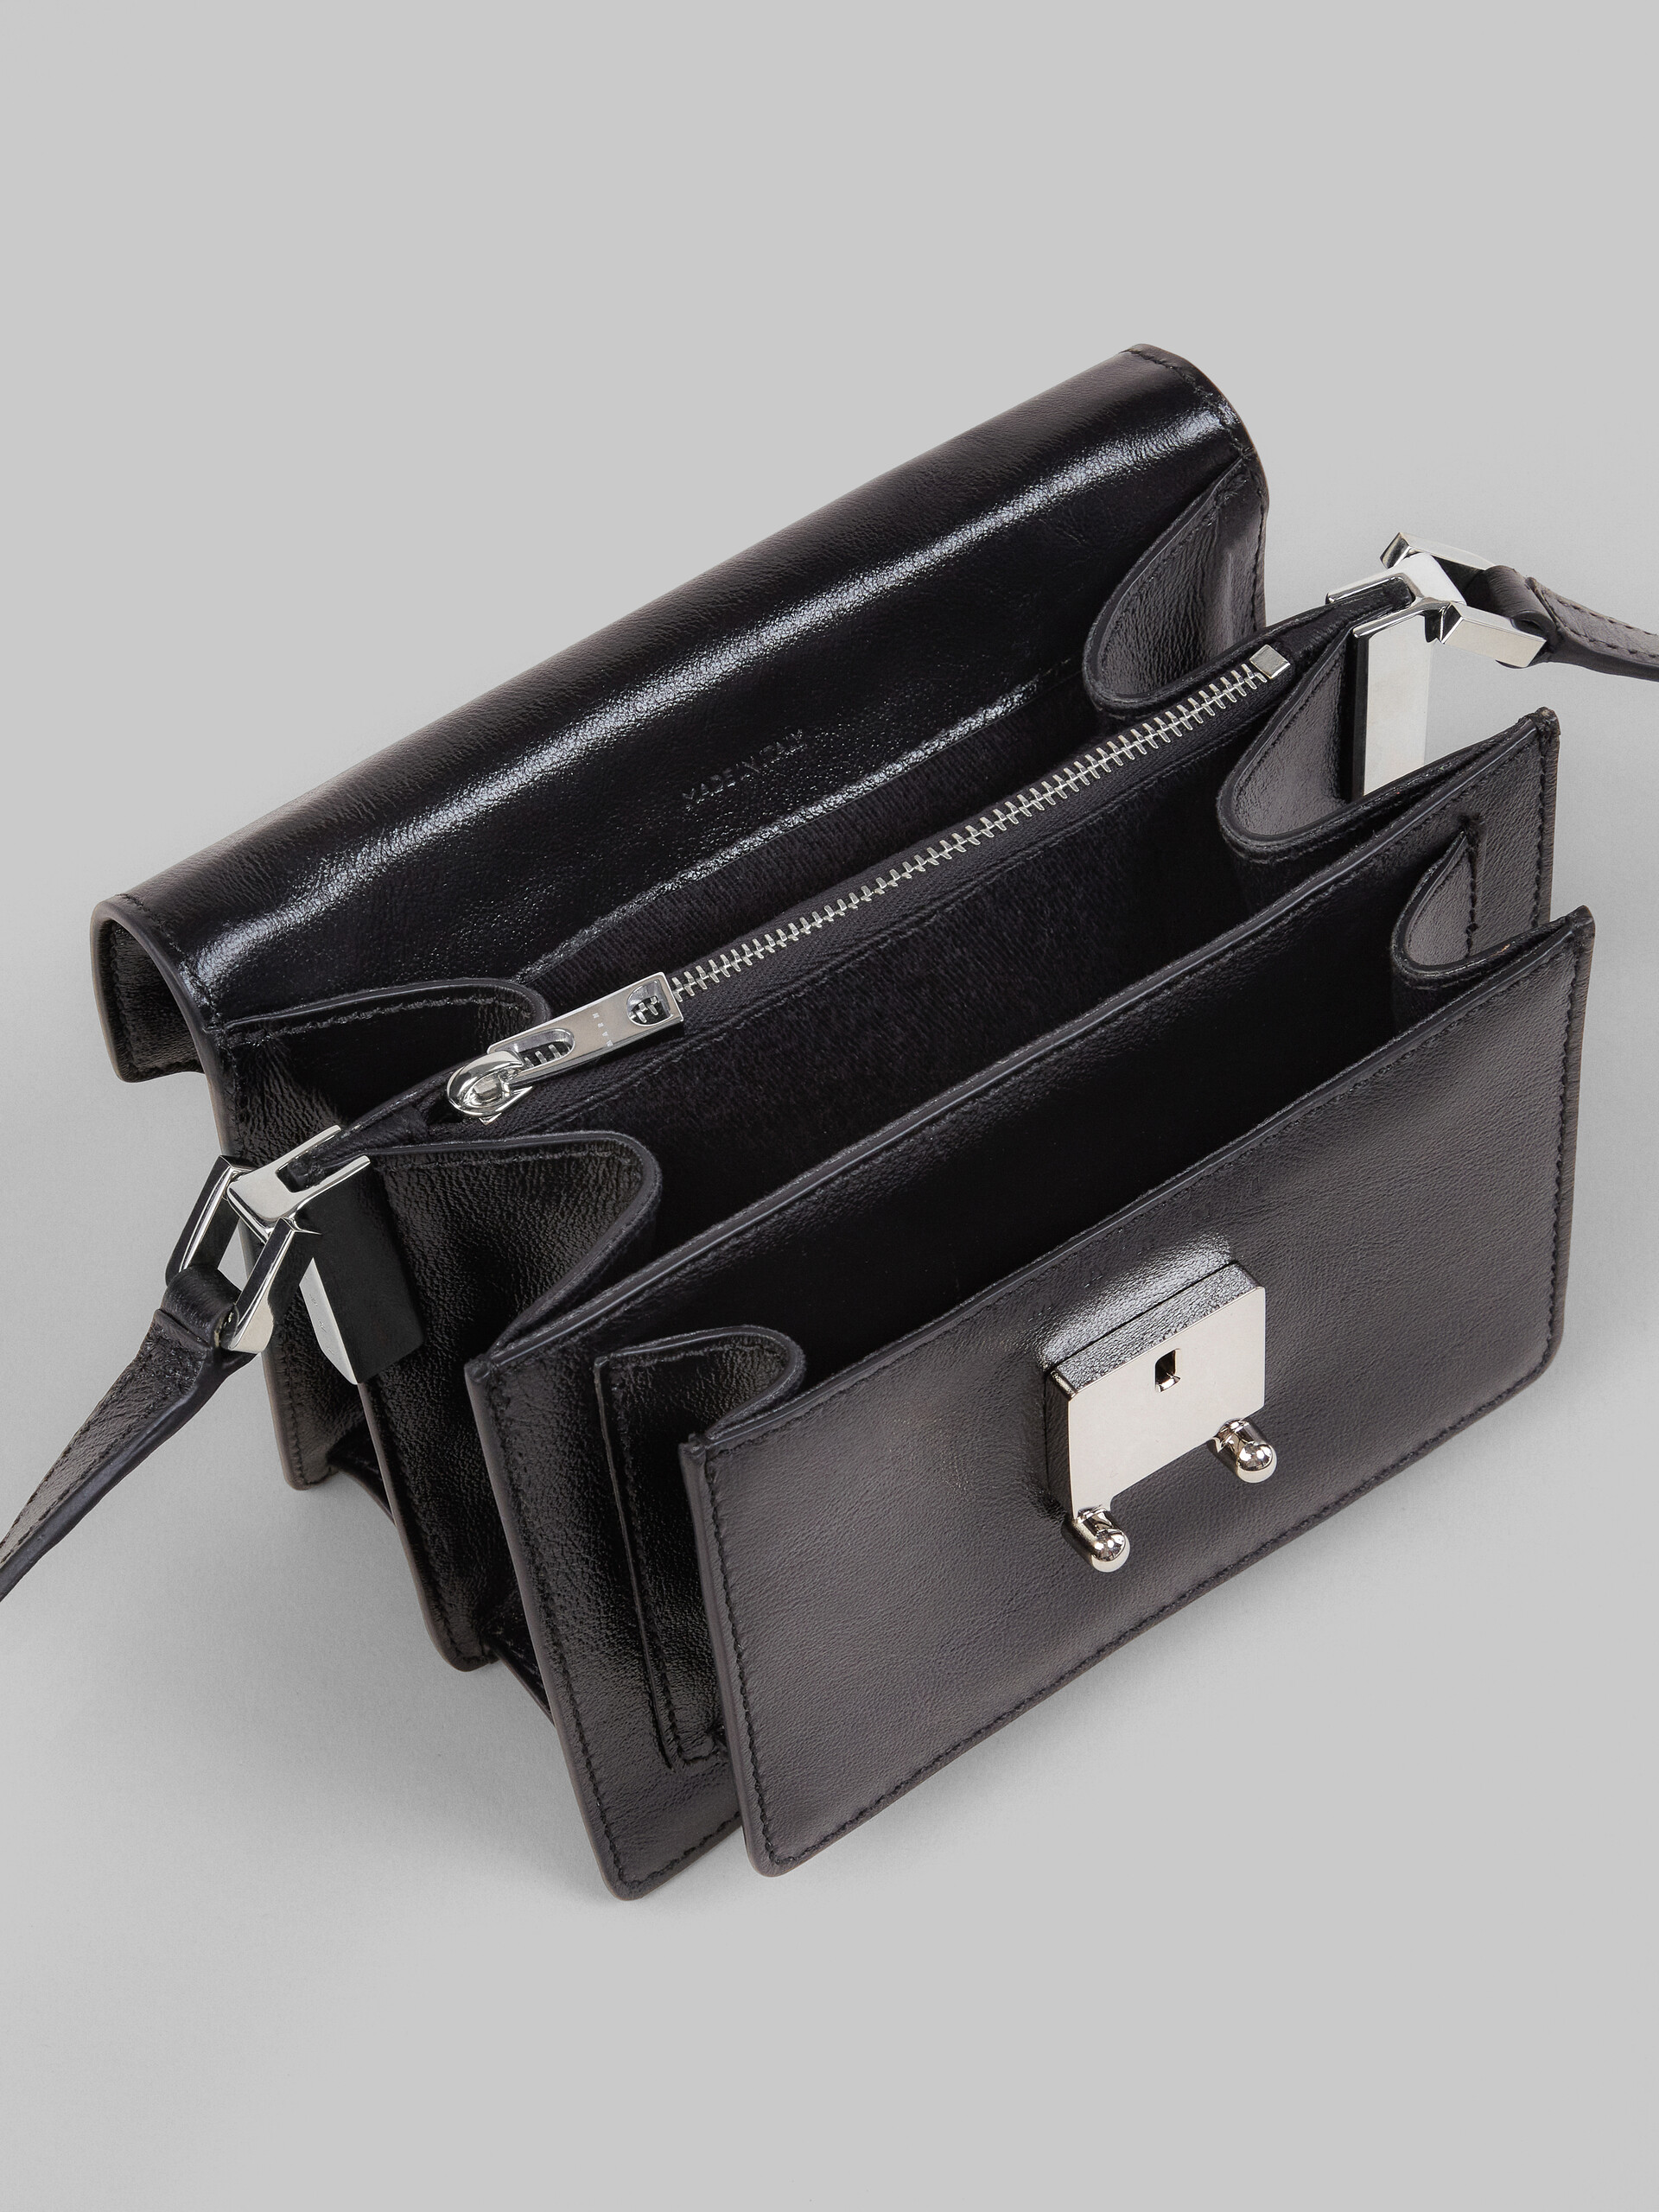 Mini-sac Trunk Soft en cuir noir - Sacs portés épaule - Image 4